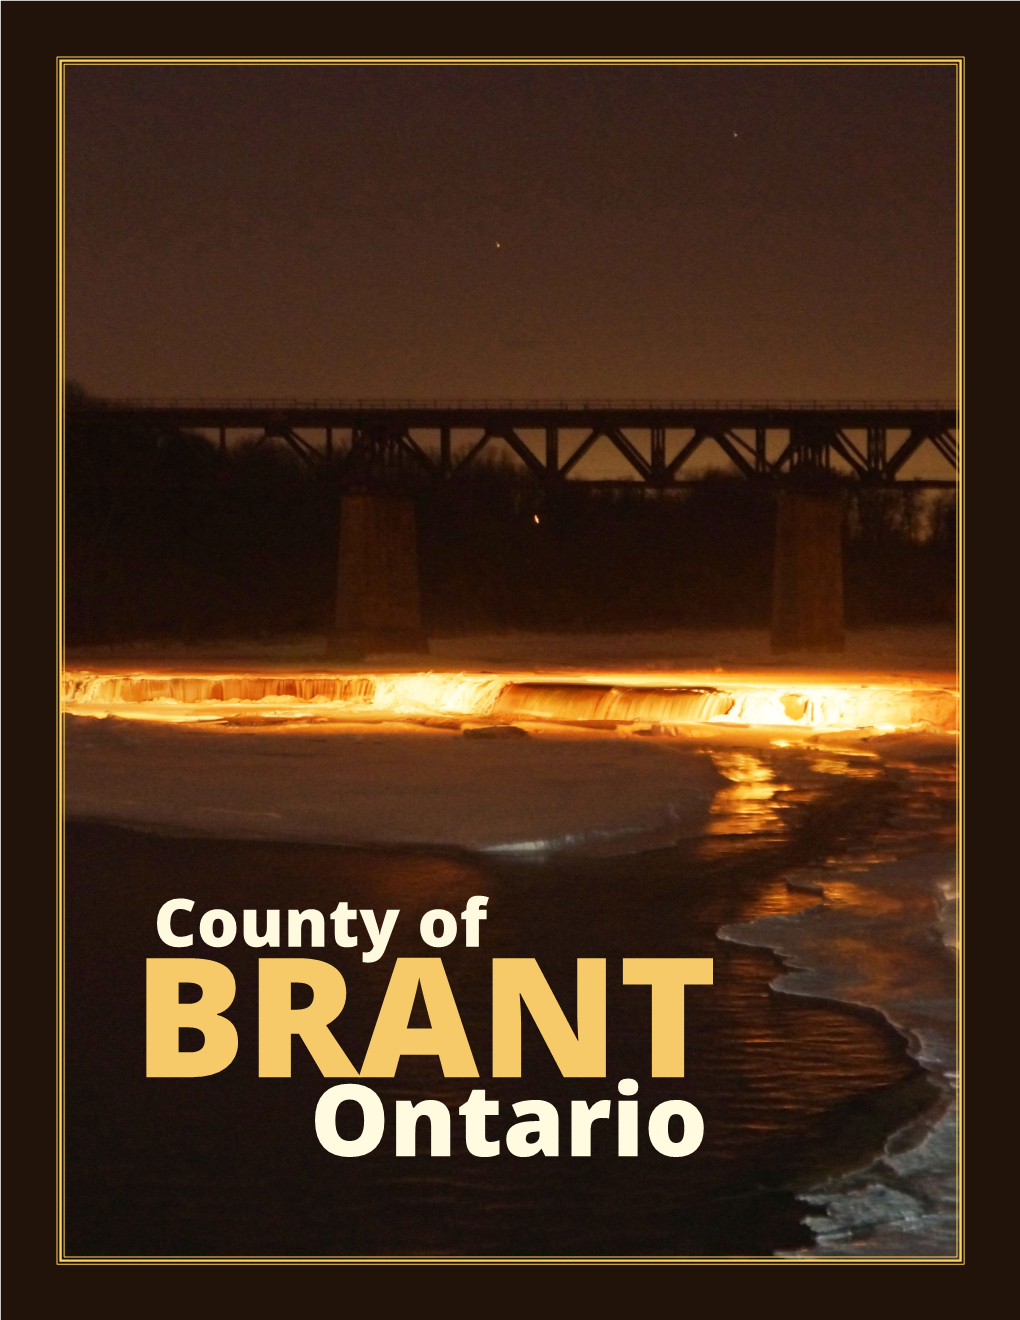 County of BRANT Ontario County of Brant, Ontario